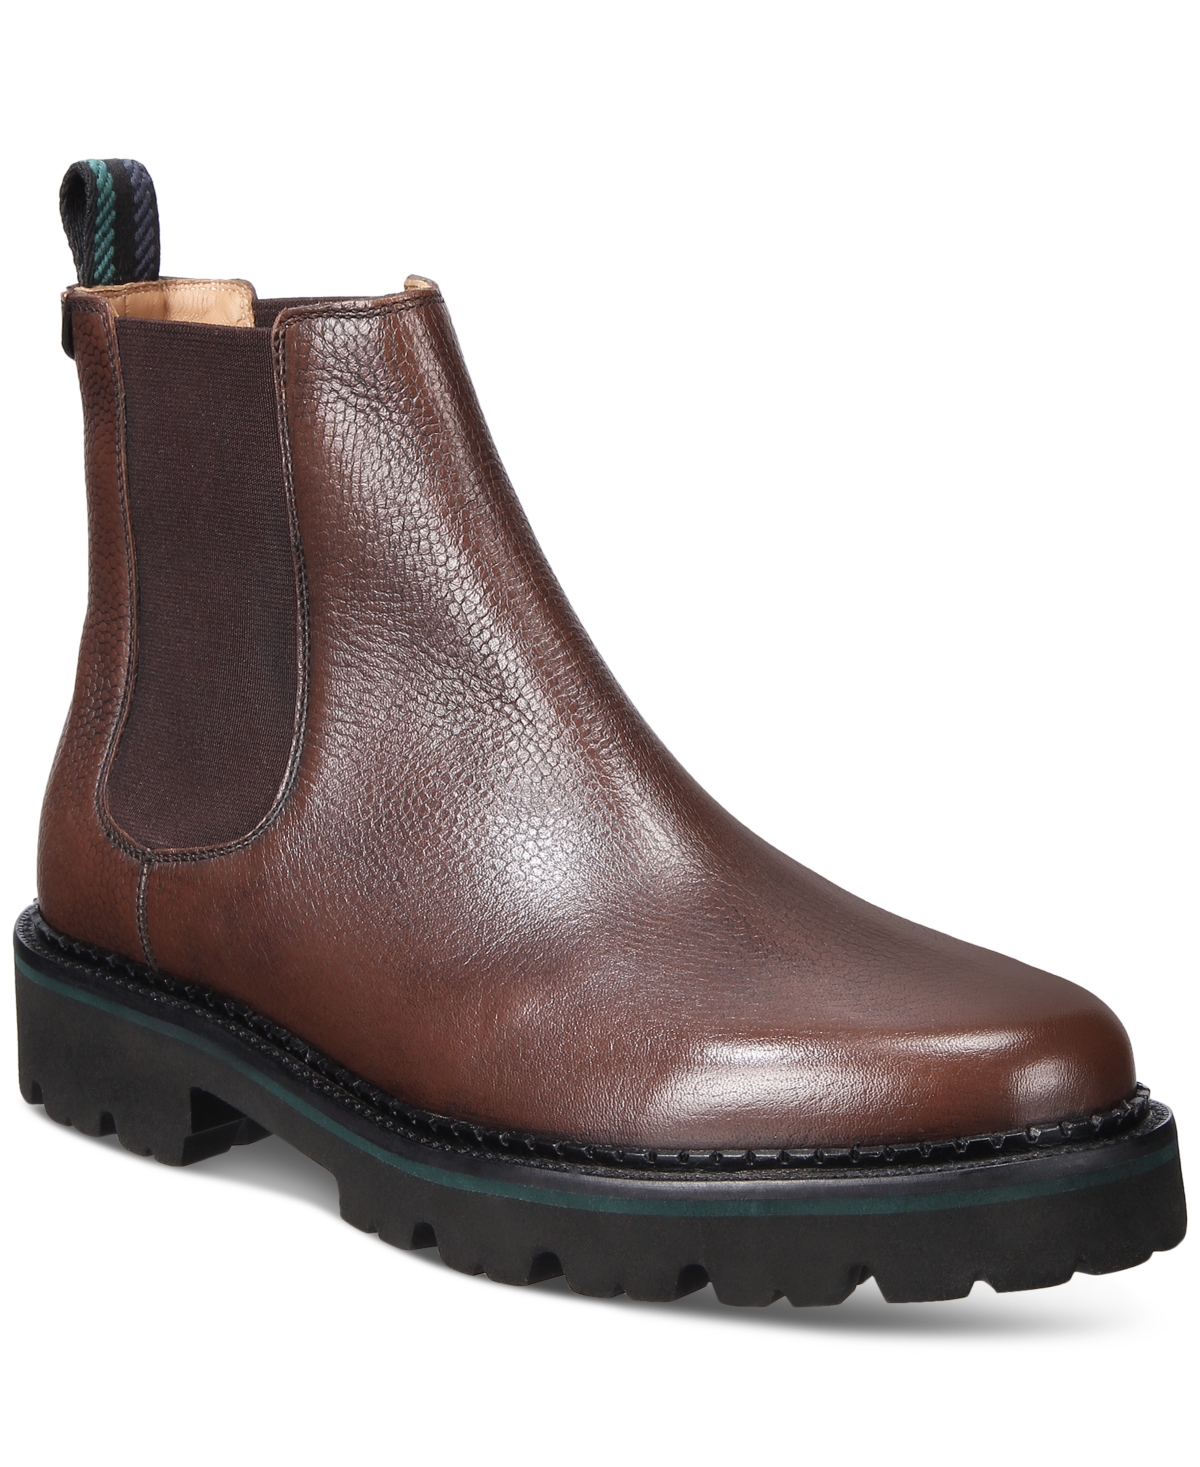 Men's Scotch Grain Leather Chelsea Boots - Brown